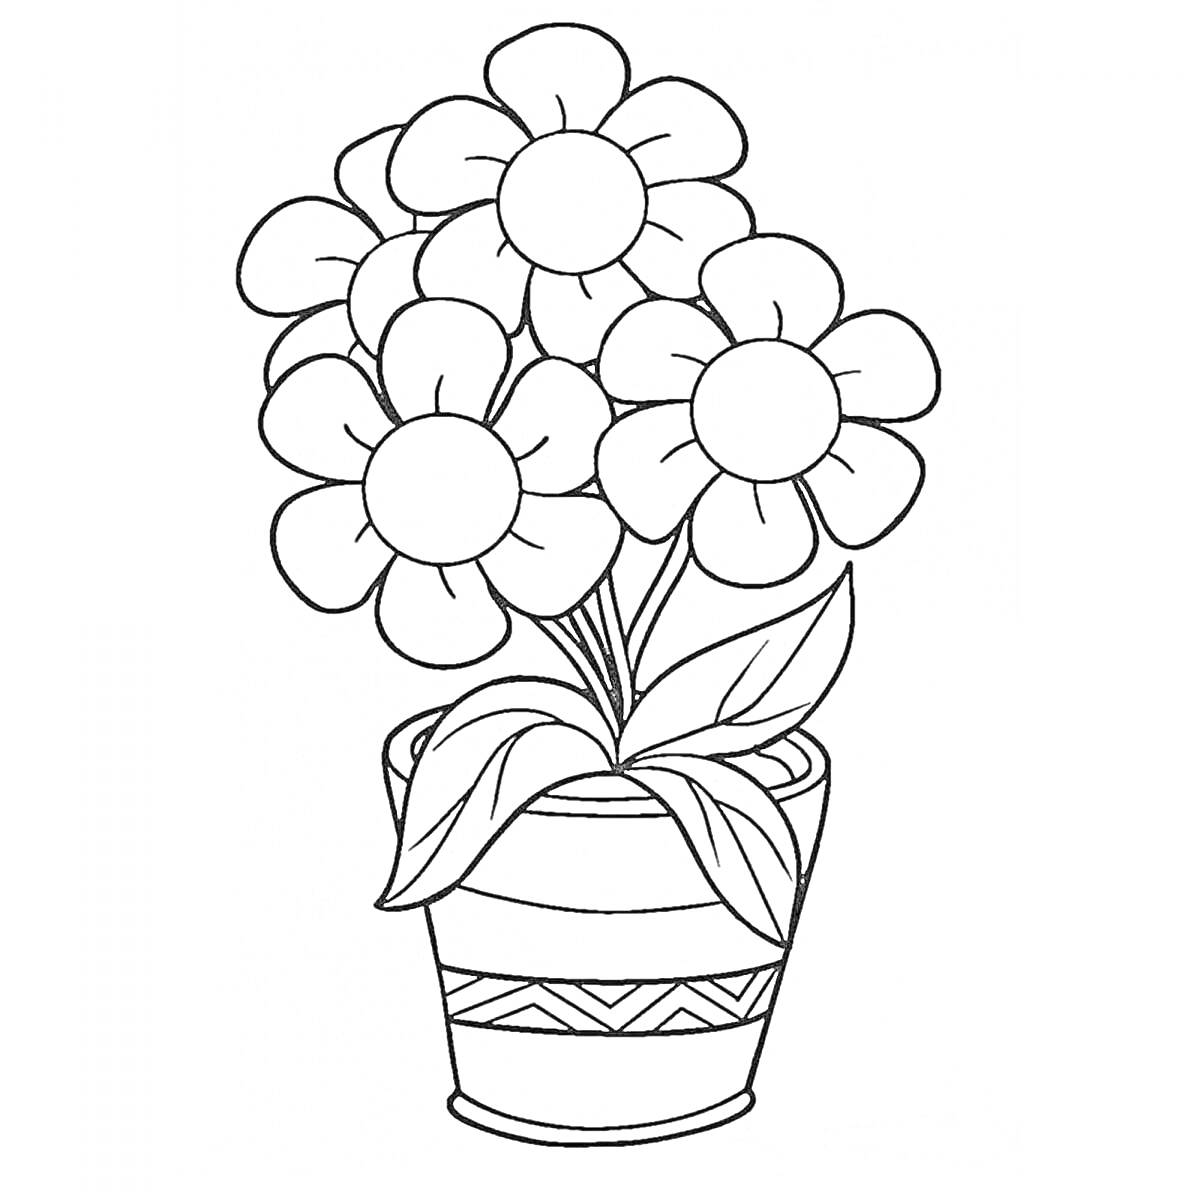 Раскраска Горшок с цветами (пять цветков с круглыми лепестками и листьями в узорчатом цветочном горшке)